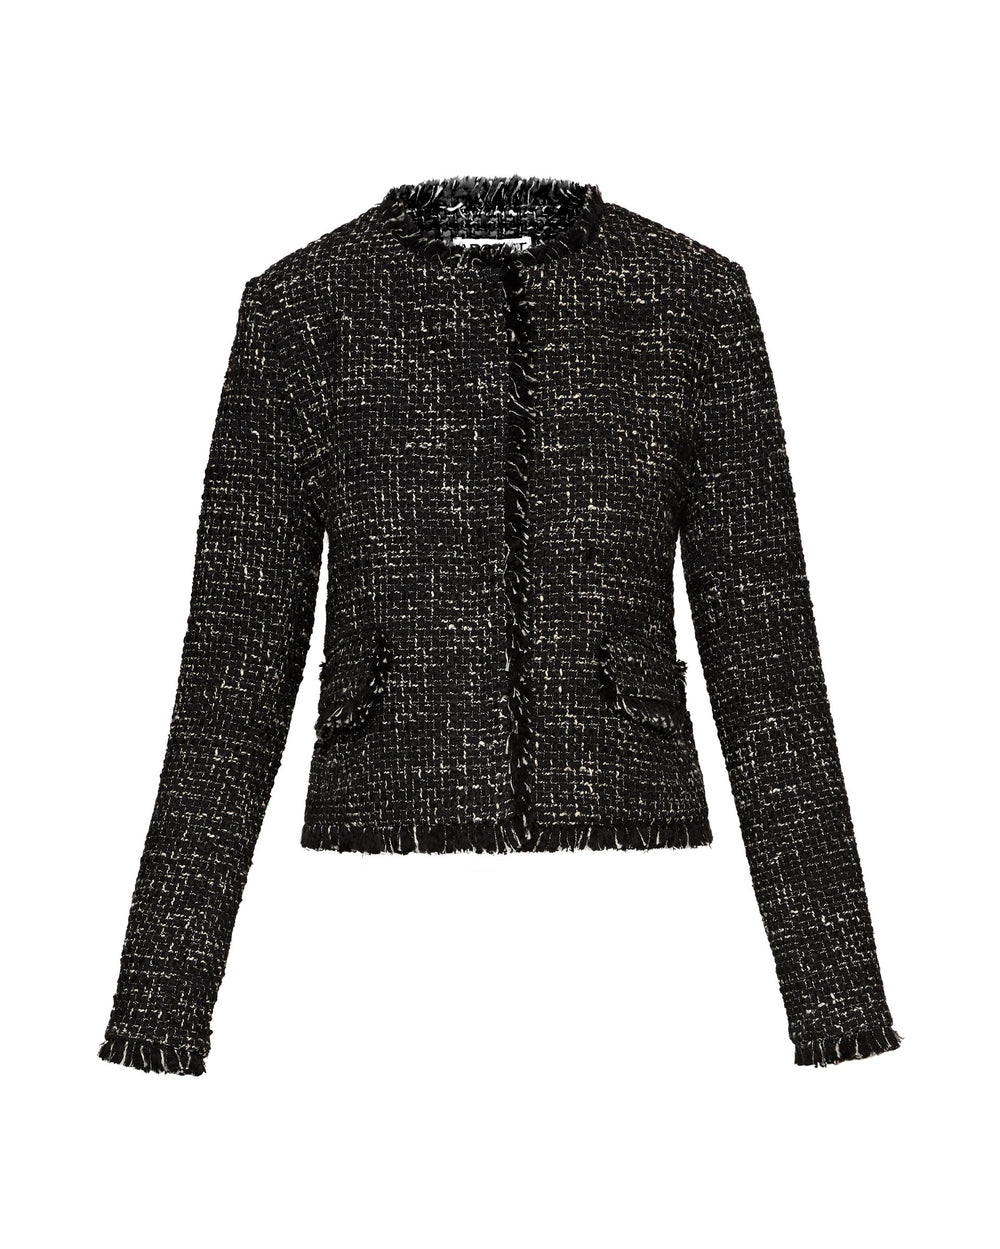 Classic Jacket in Tweed | Black Multi